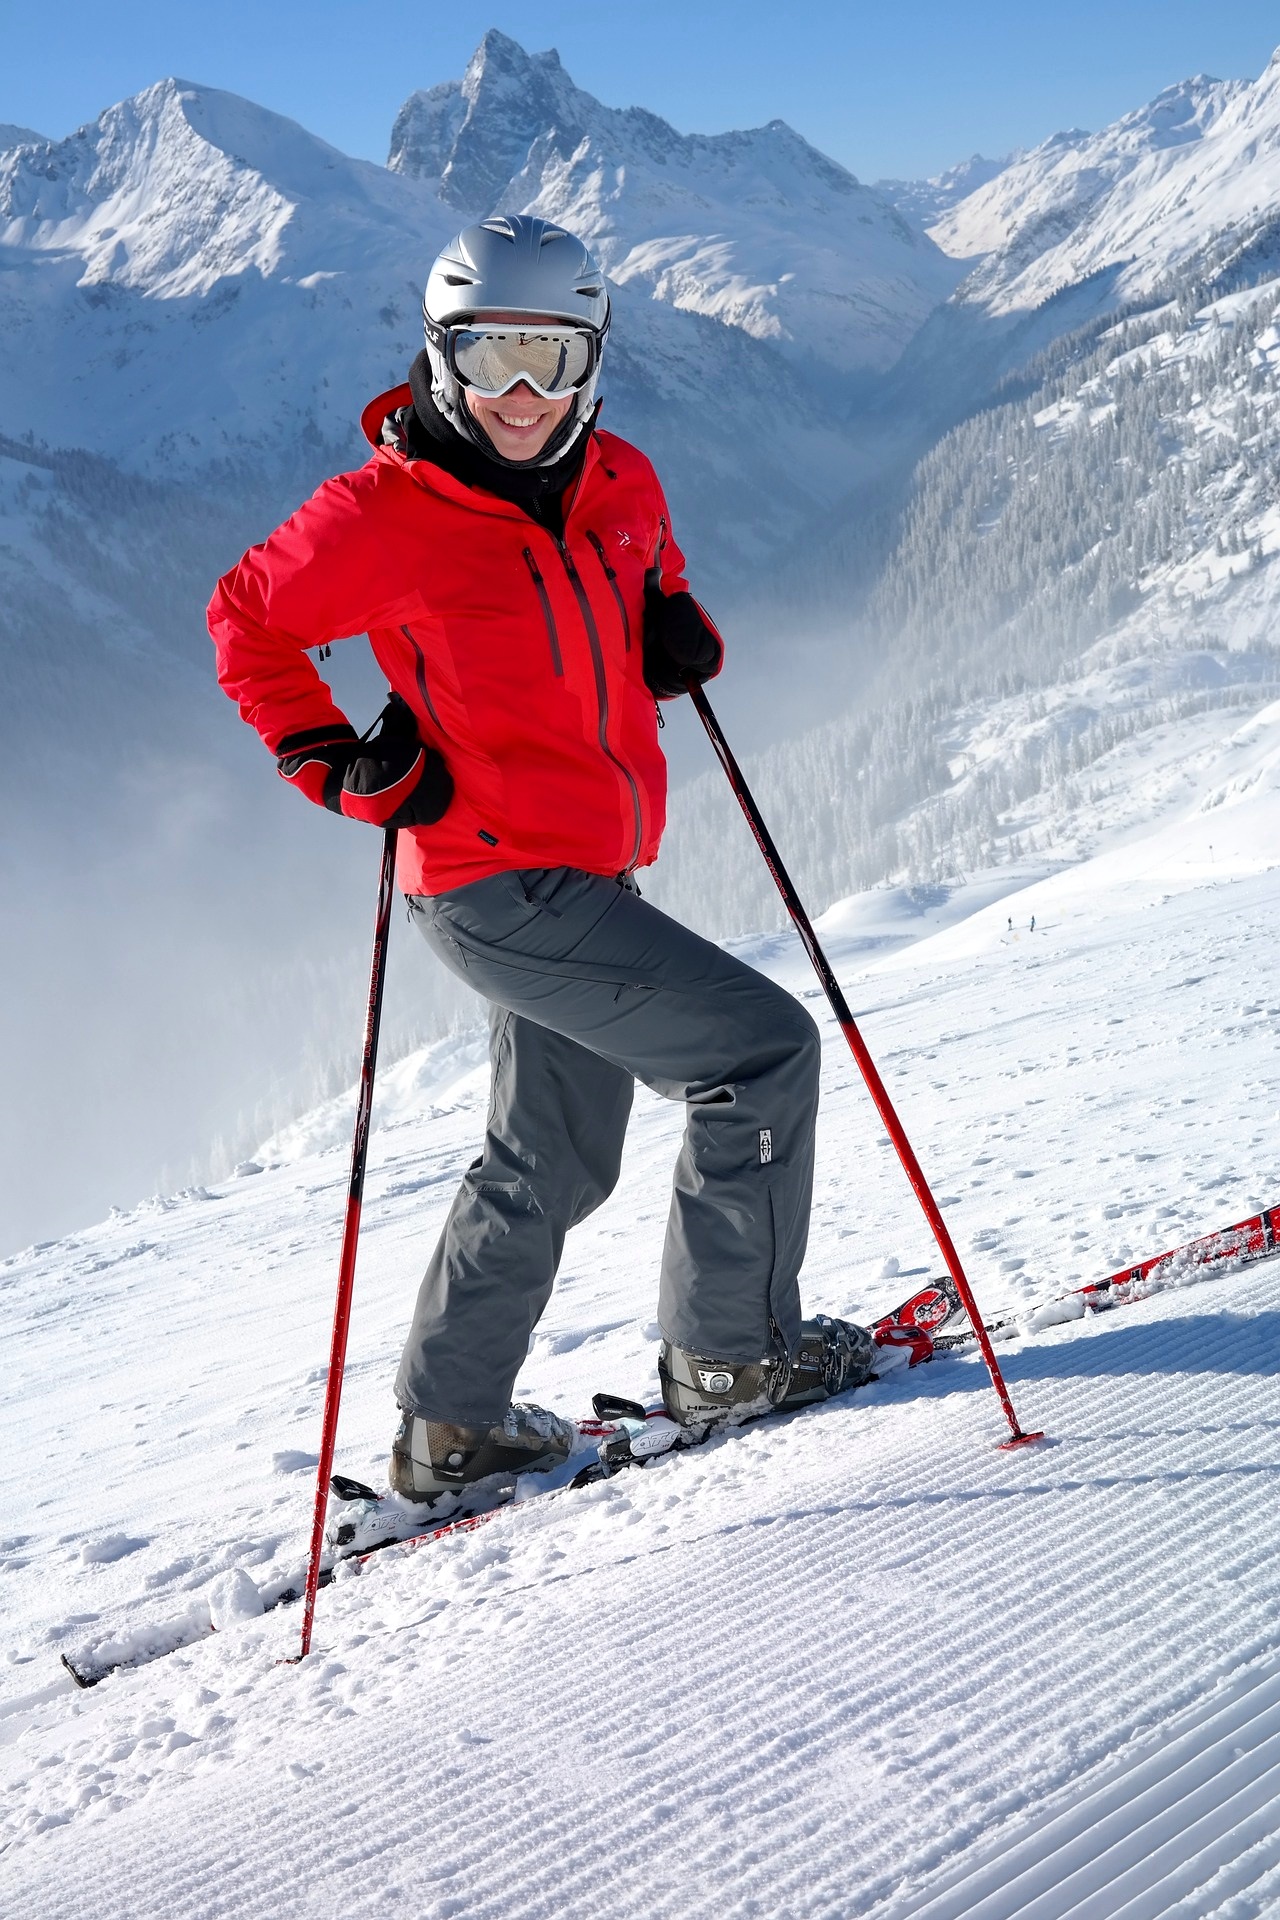 skibrille-durchblick-piste-skifahren-uv-schutz-beschlagen-optik-weissmann-oberaudorf-schibrillen-belueftungsloecher-sicht-luftzirkulationssystem-brillentraeger-helm